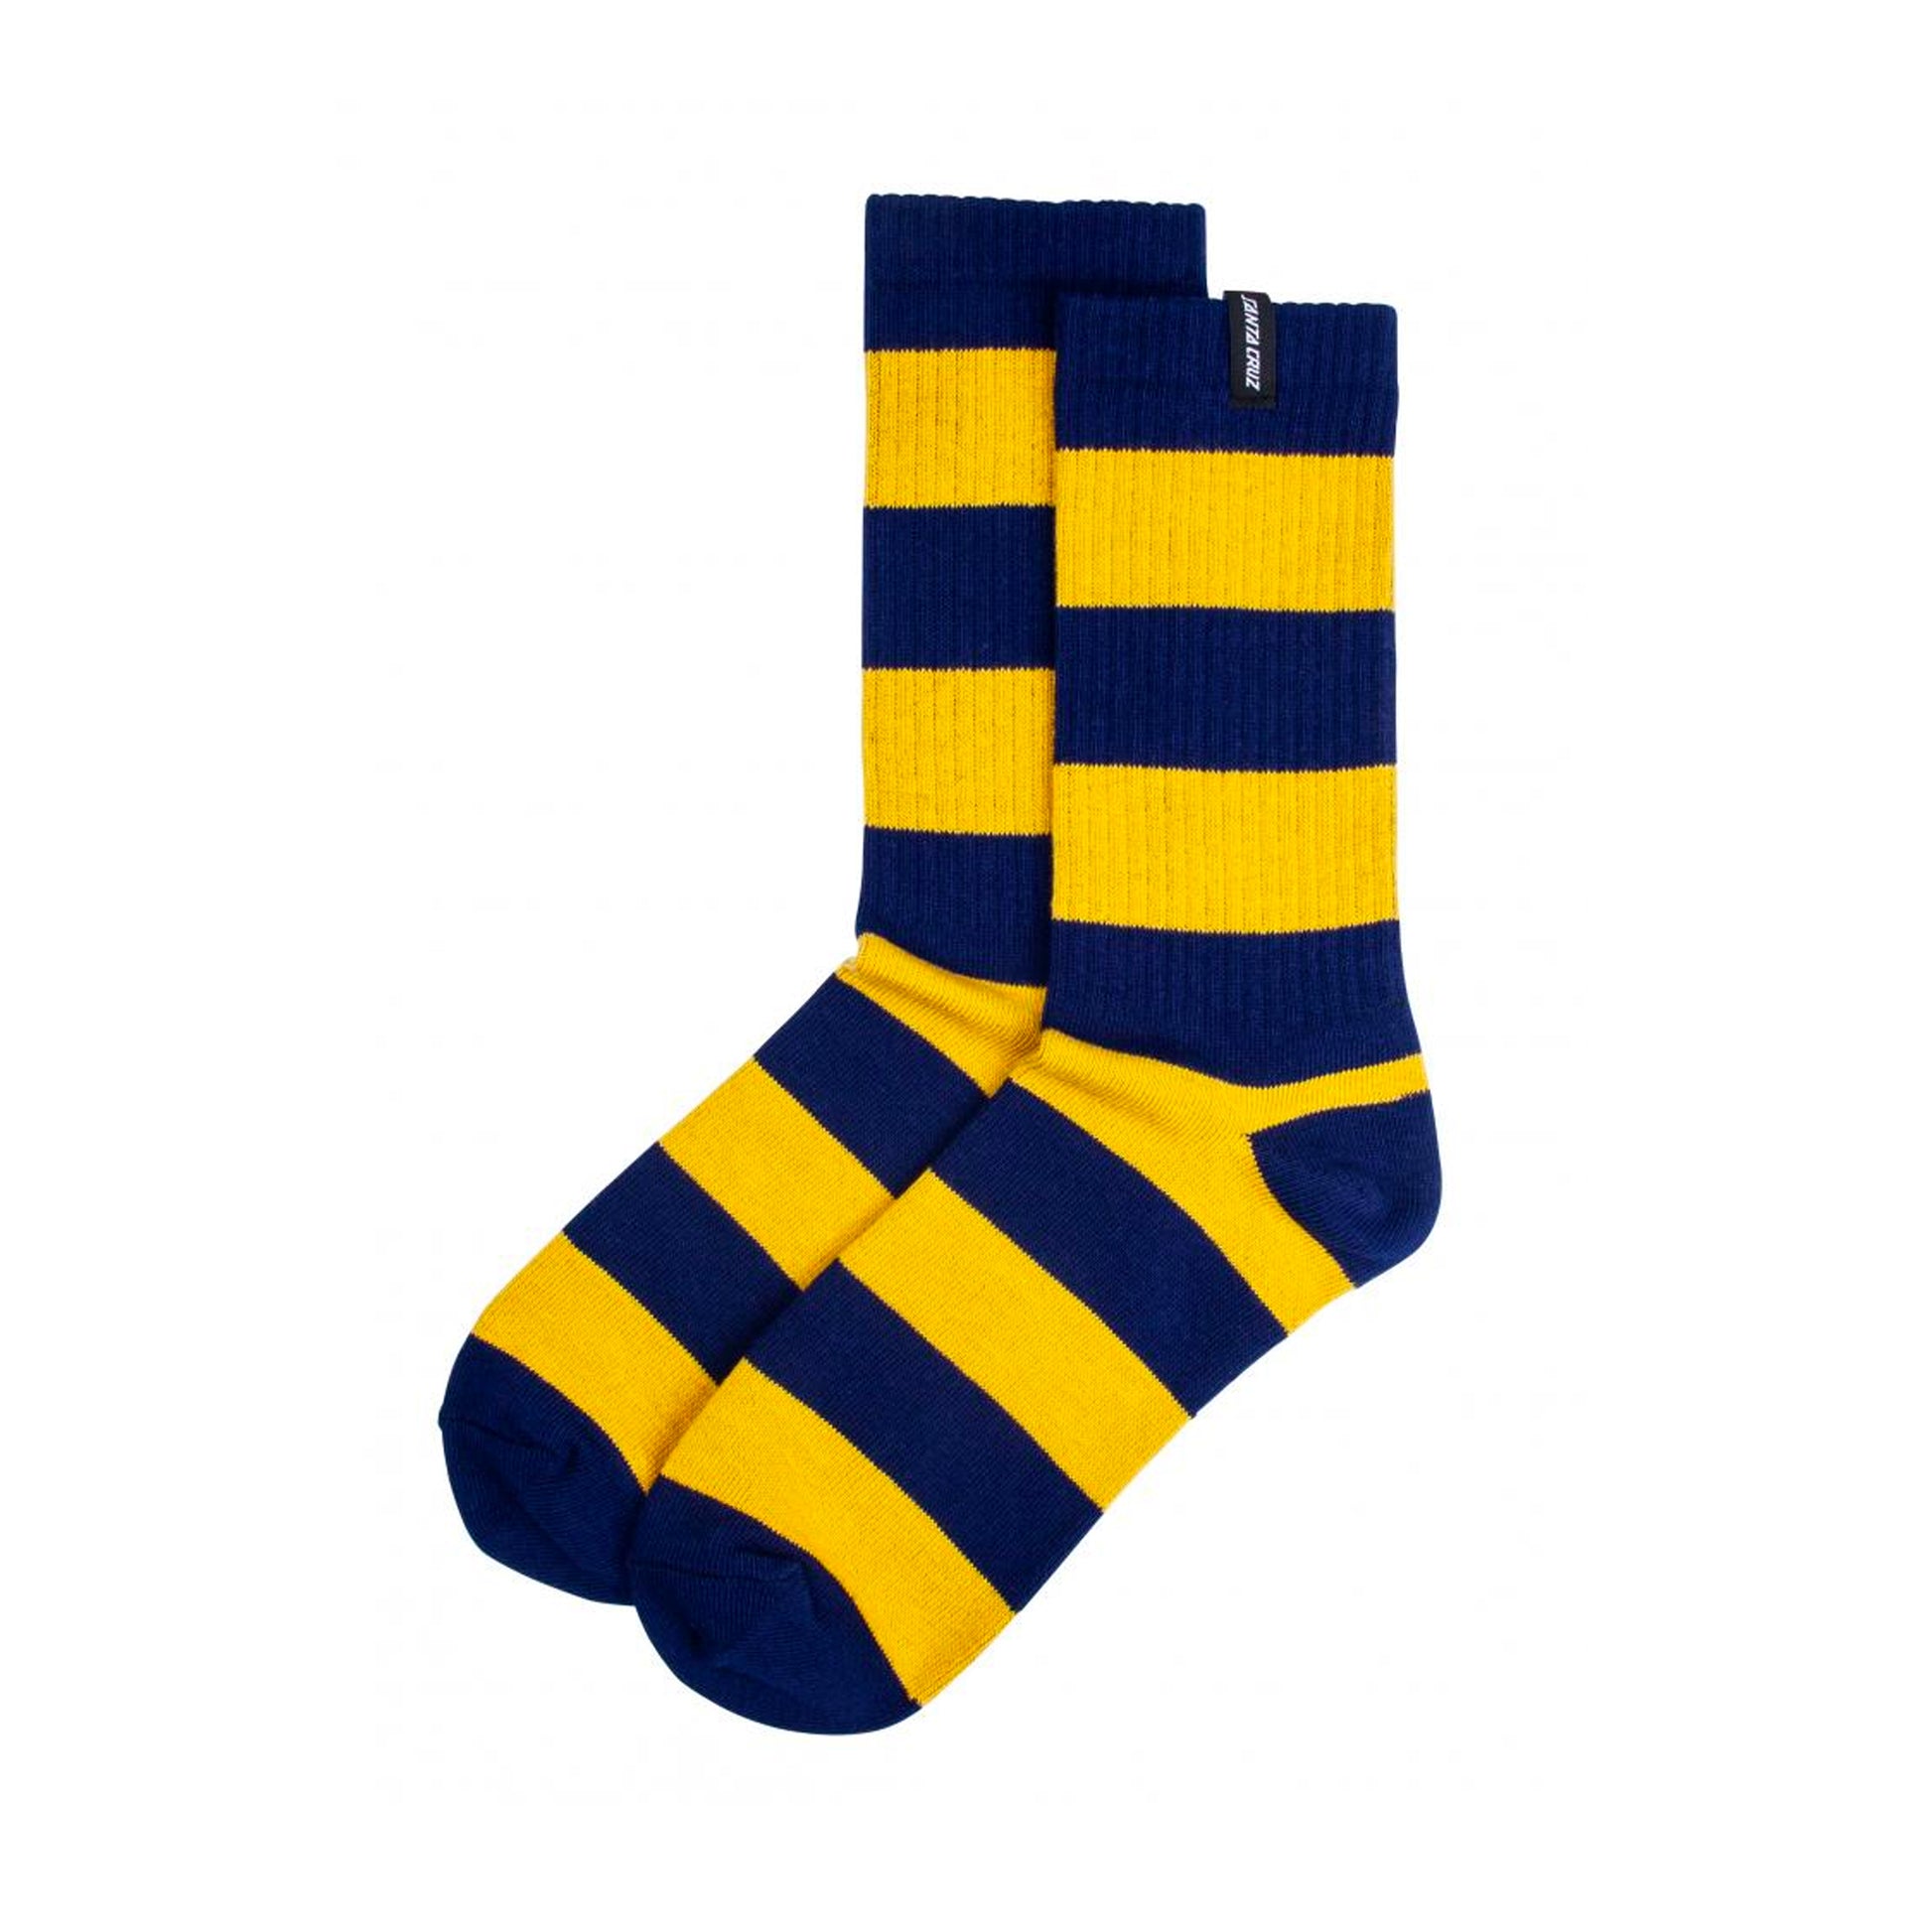 Santa Cruz Socks Dip Sock Navy/Mustard - Prime Delux Store